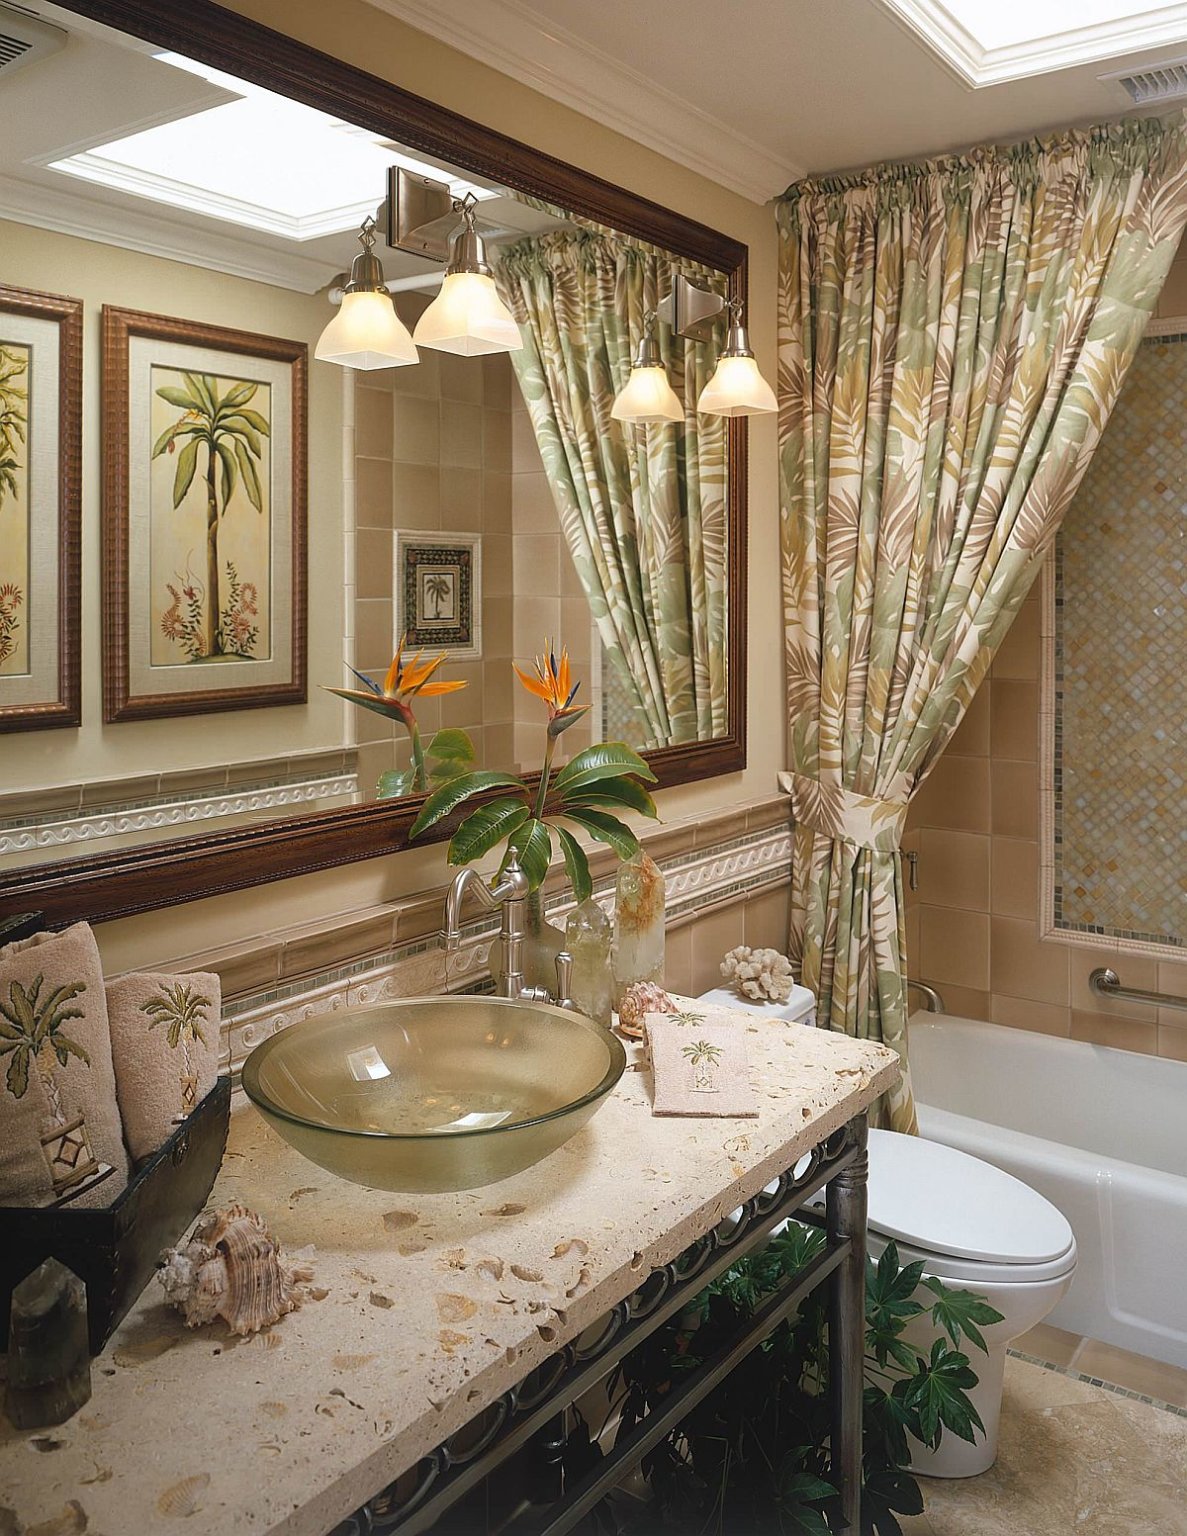 Một phòng tắm phong cách nhiệt đới đầy hoa văn màu xanh lá cây kết hợp ăn ý với bộ đèn treo tường xinh xắn.